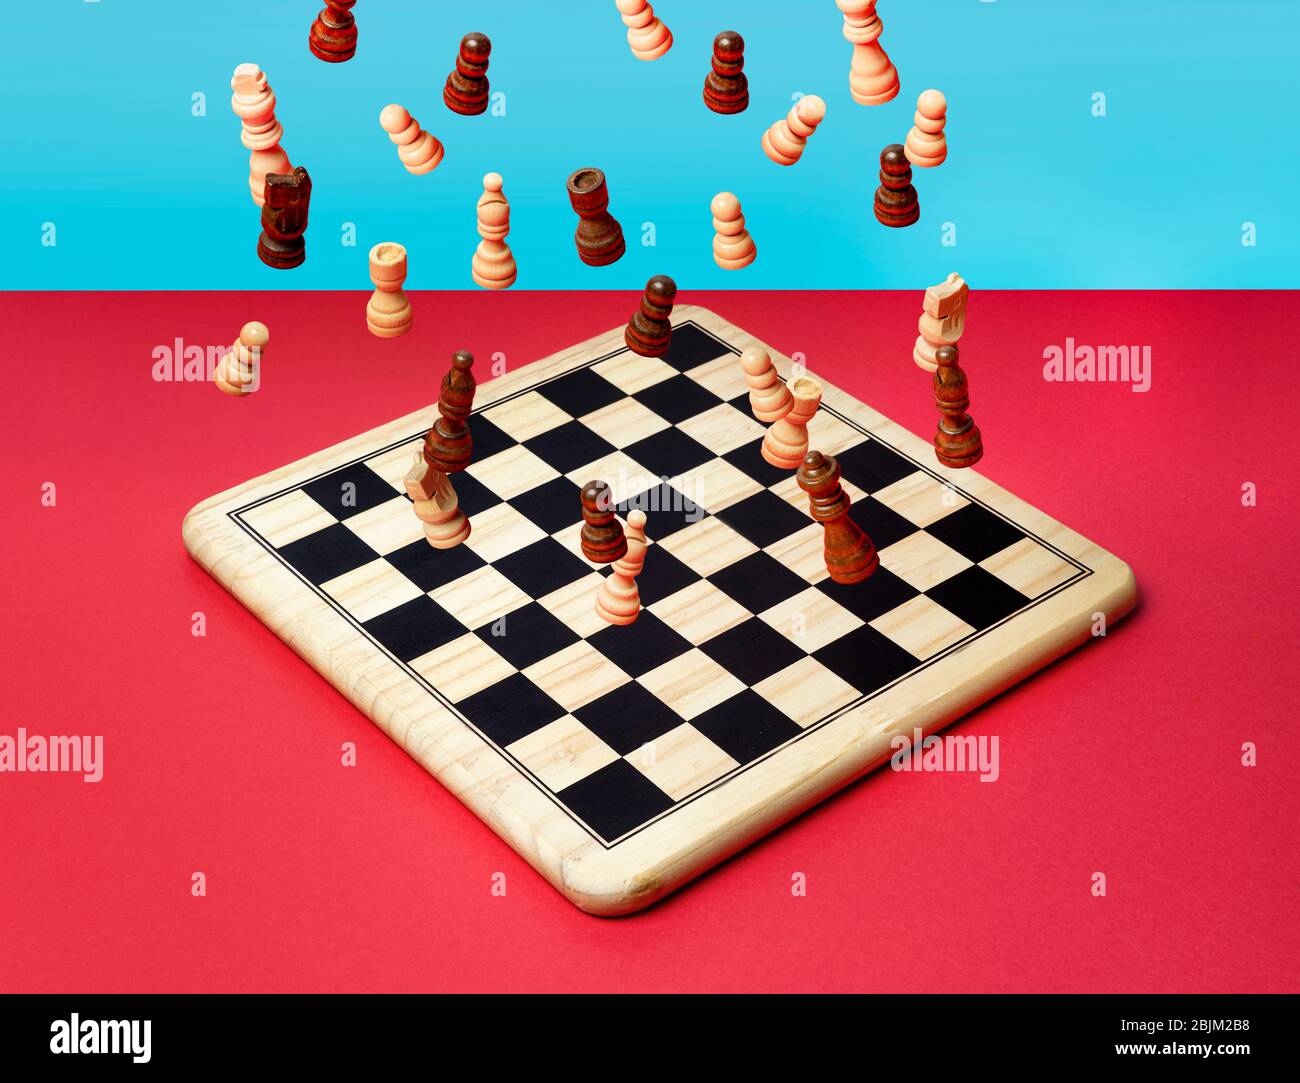 la chute des échecs sur un chessboard Banque D'Images